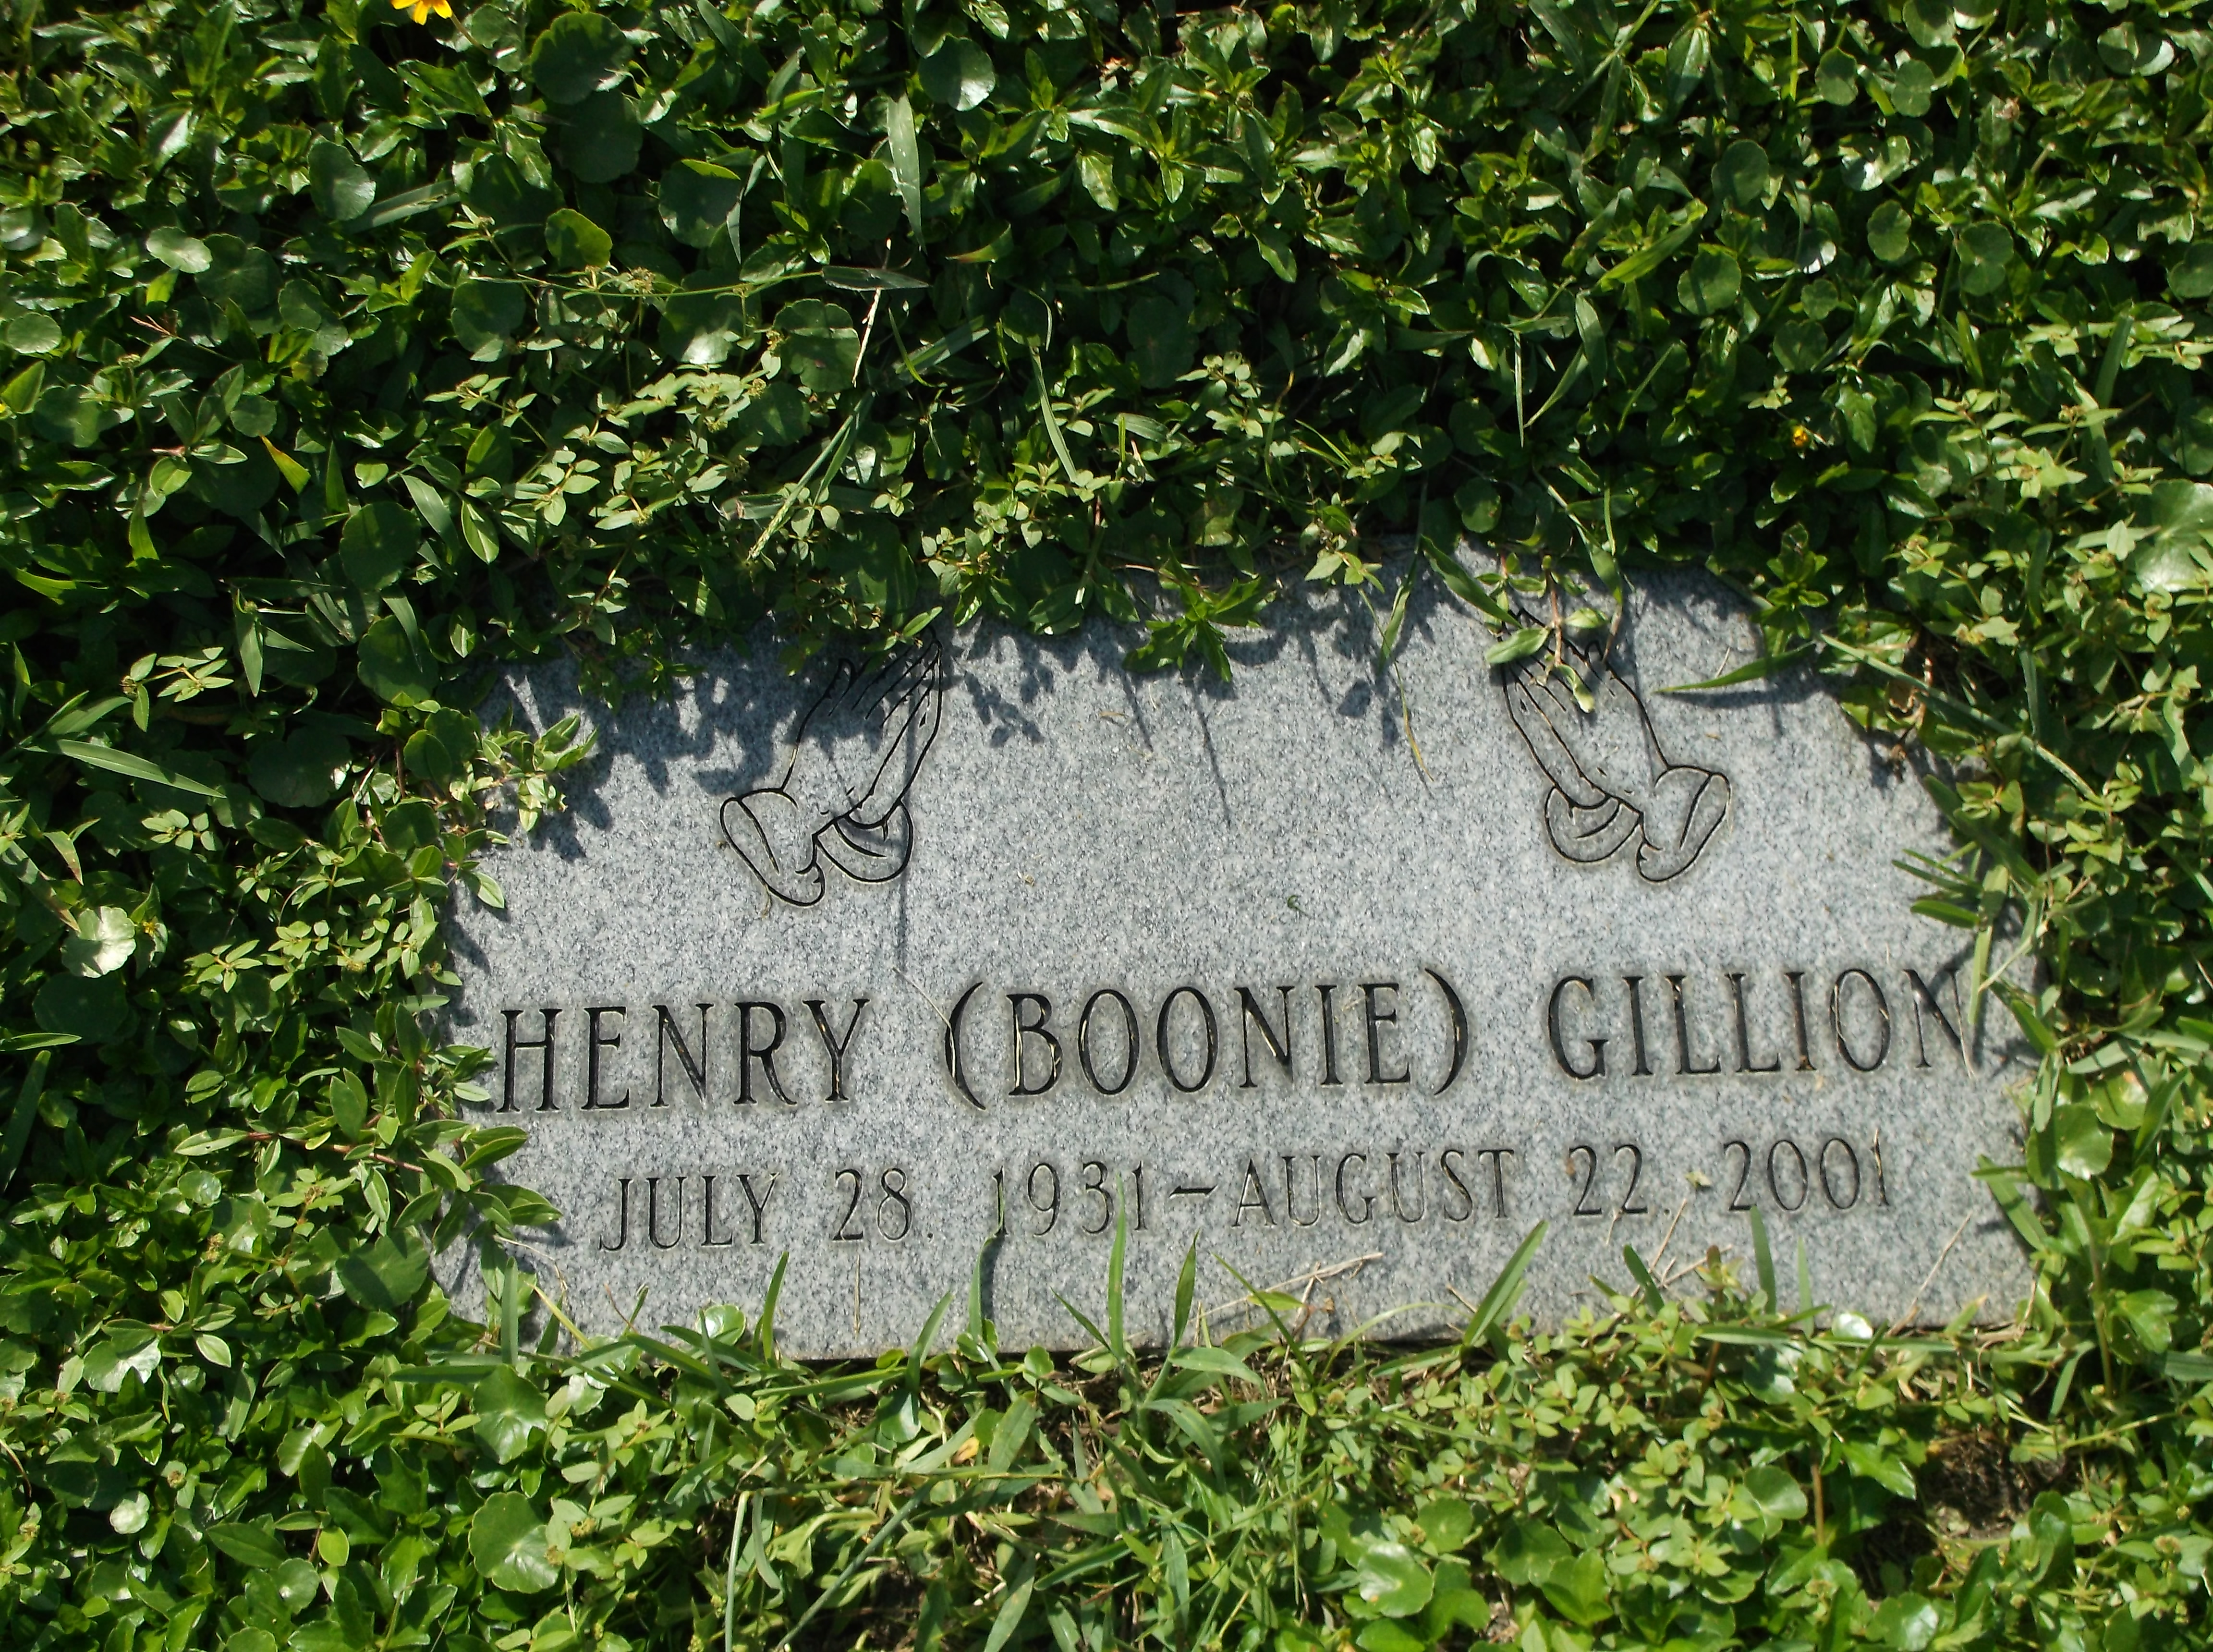 Henry "Boonie" Gillion